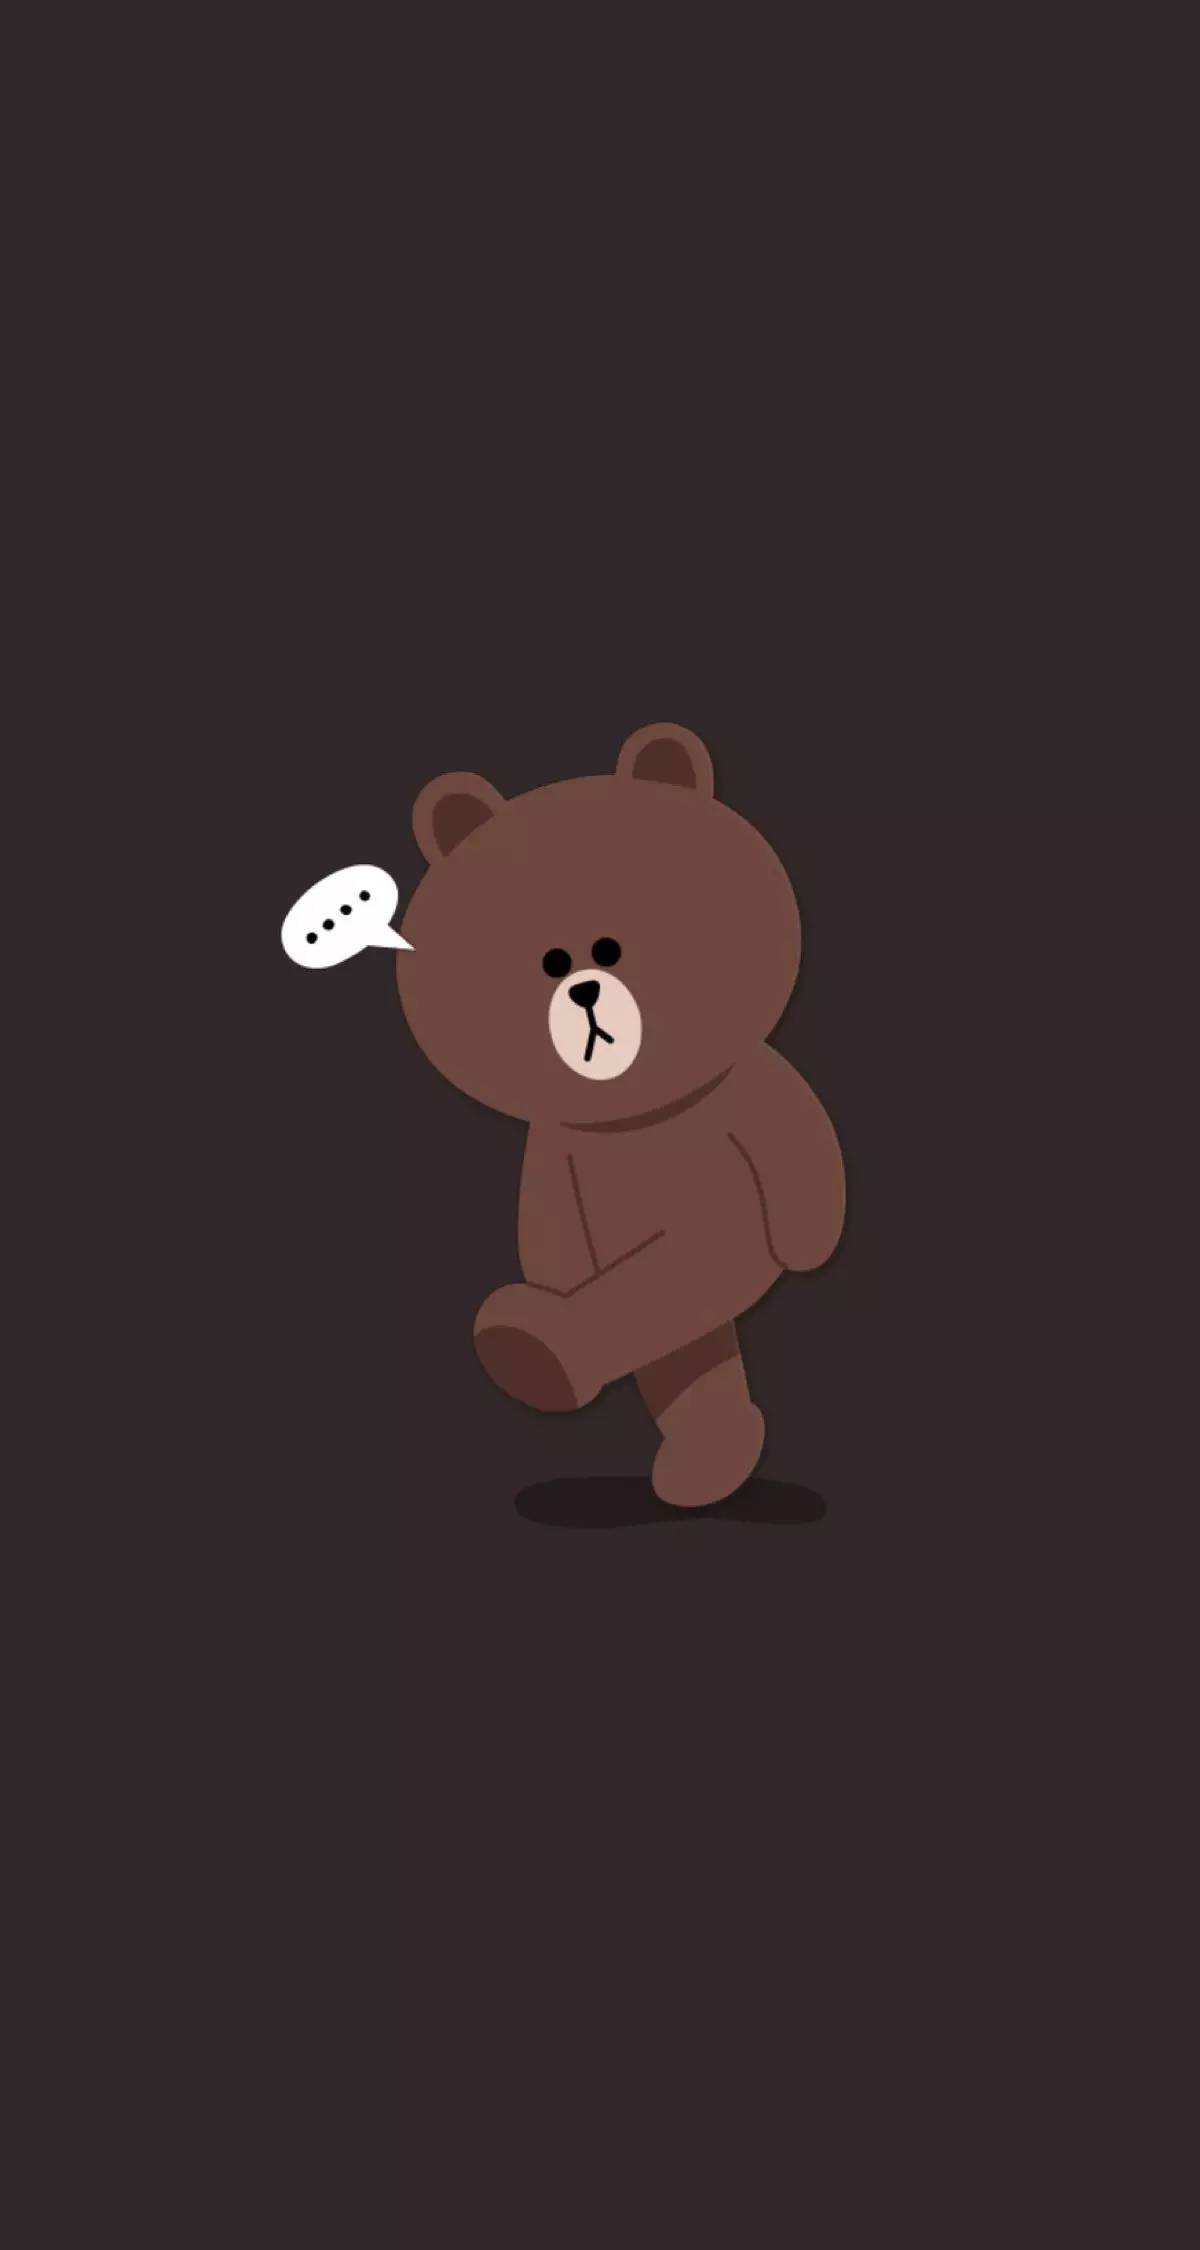 Khám phá nhiều hơn 100 hình nền gấu brown cute tuyệt vời nhất   thdonghoadian